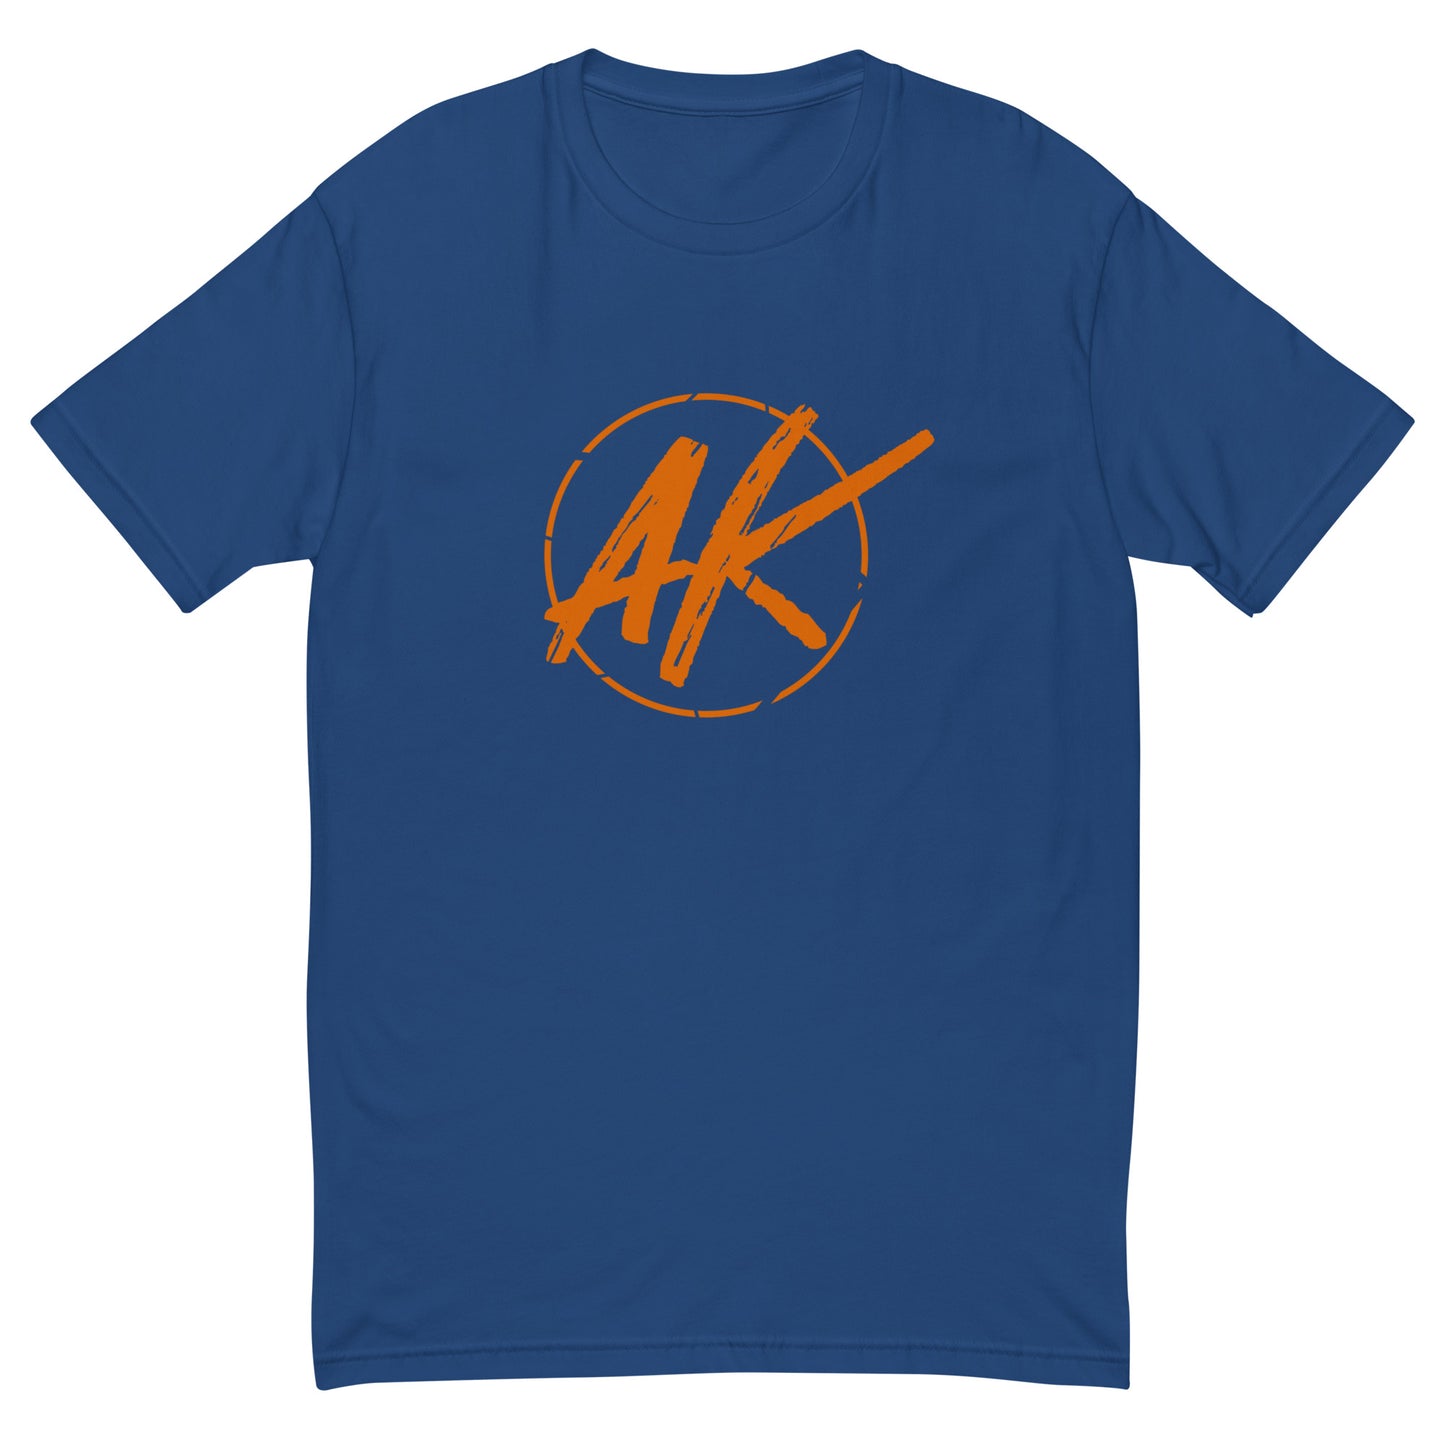 M| AK (orange)